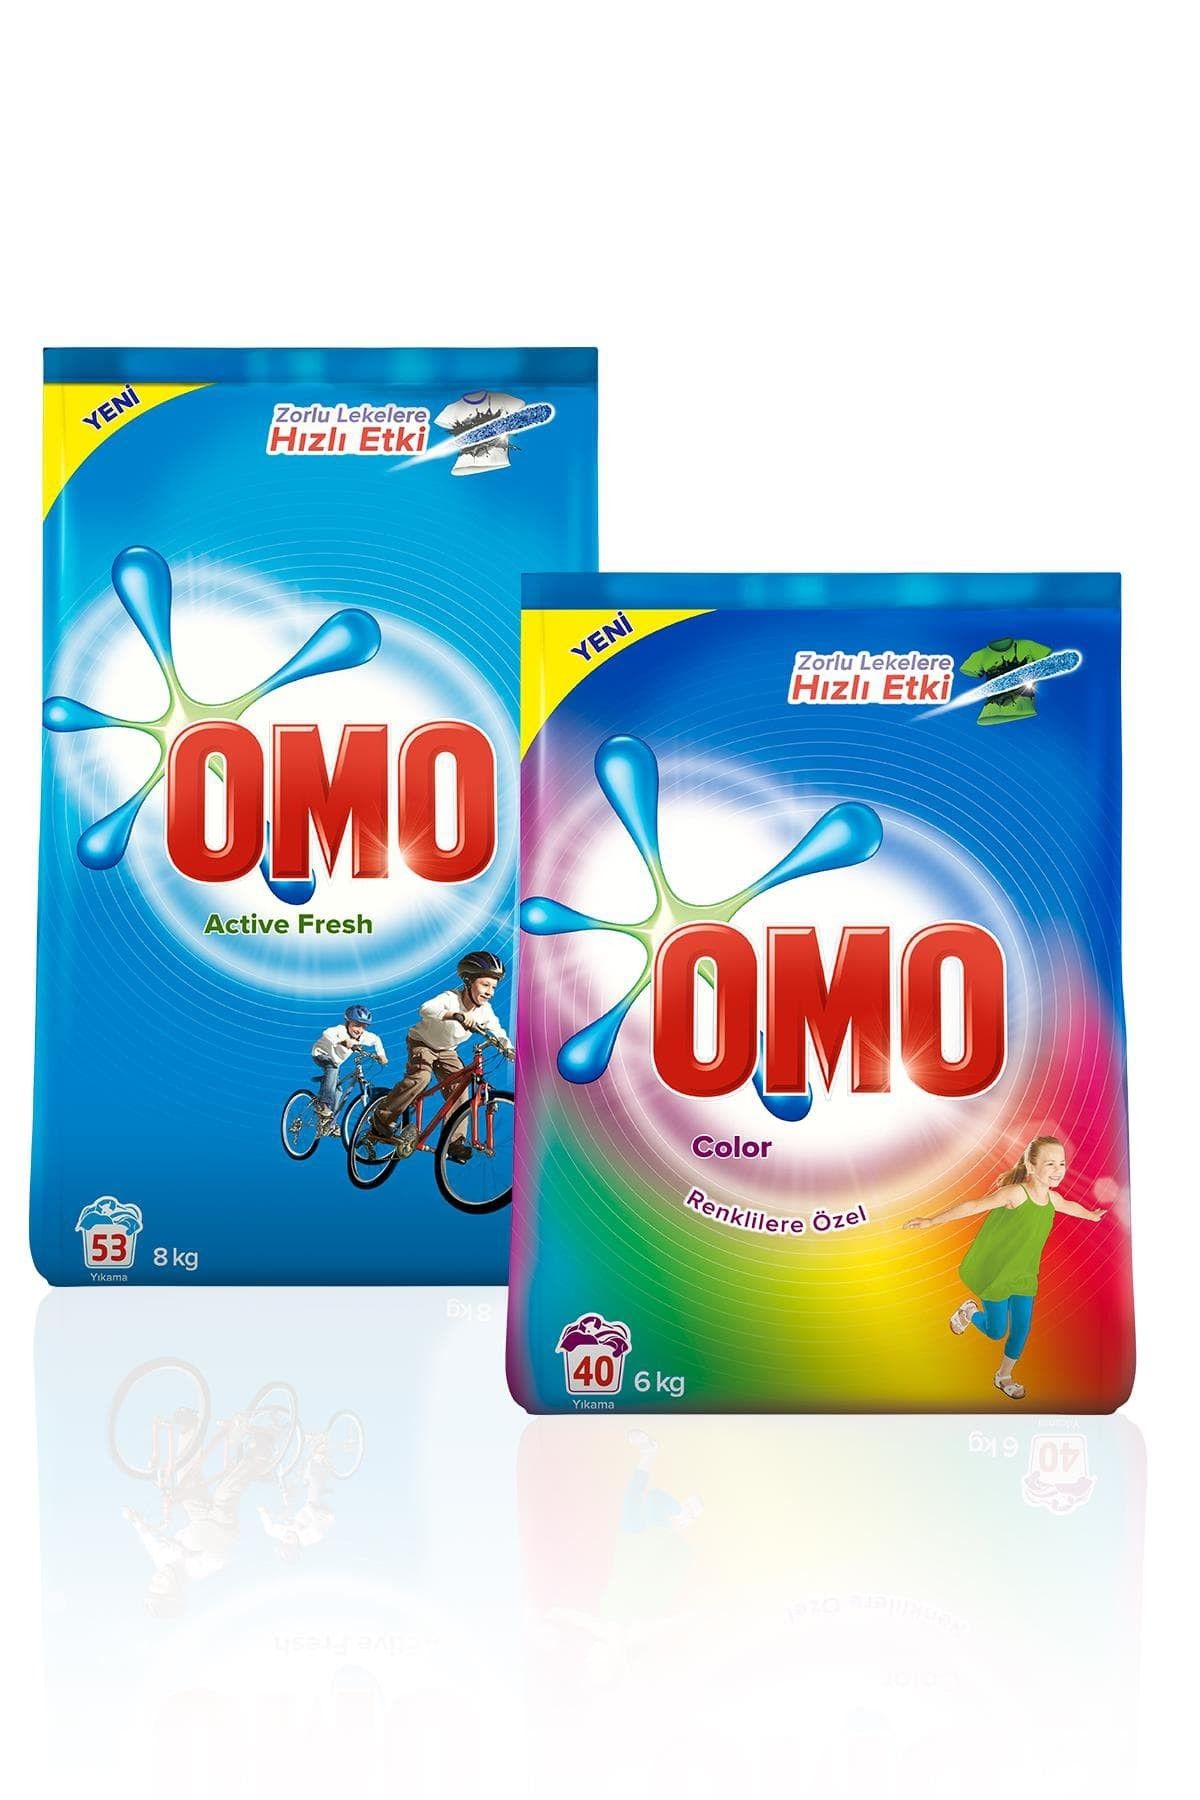 Omo Toz Deterjan Active Fresh 8 kg + Color 6 kg